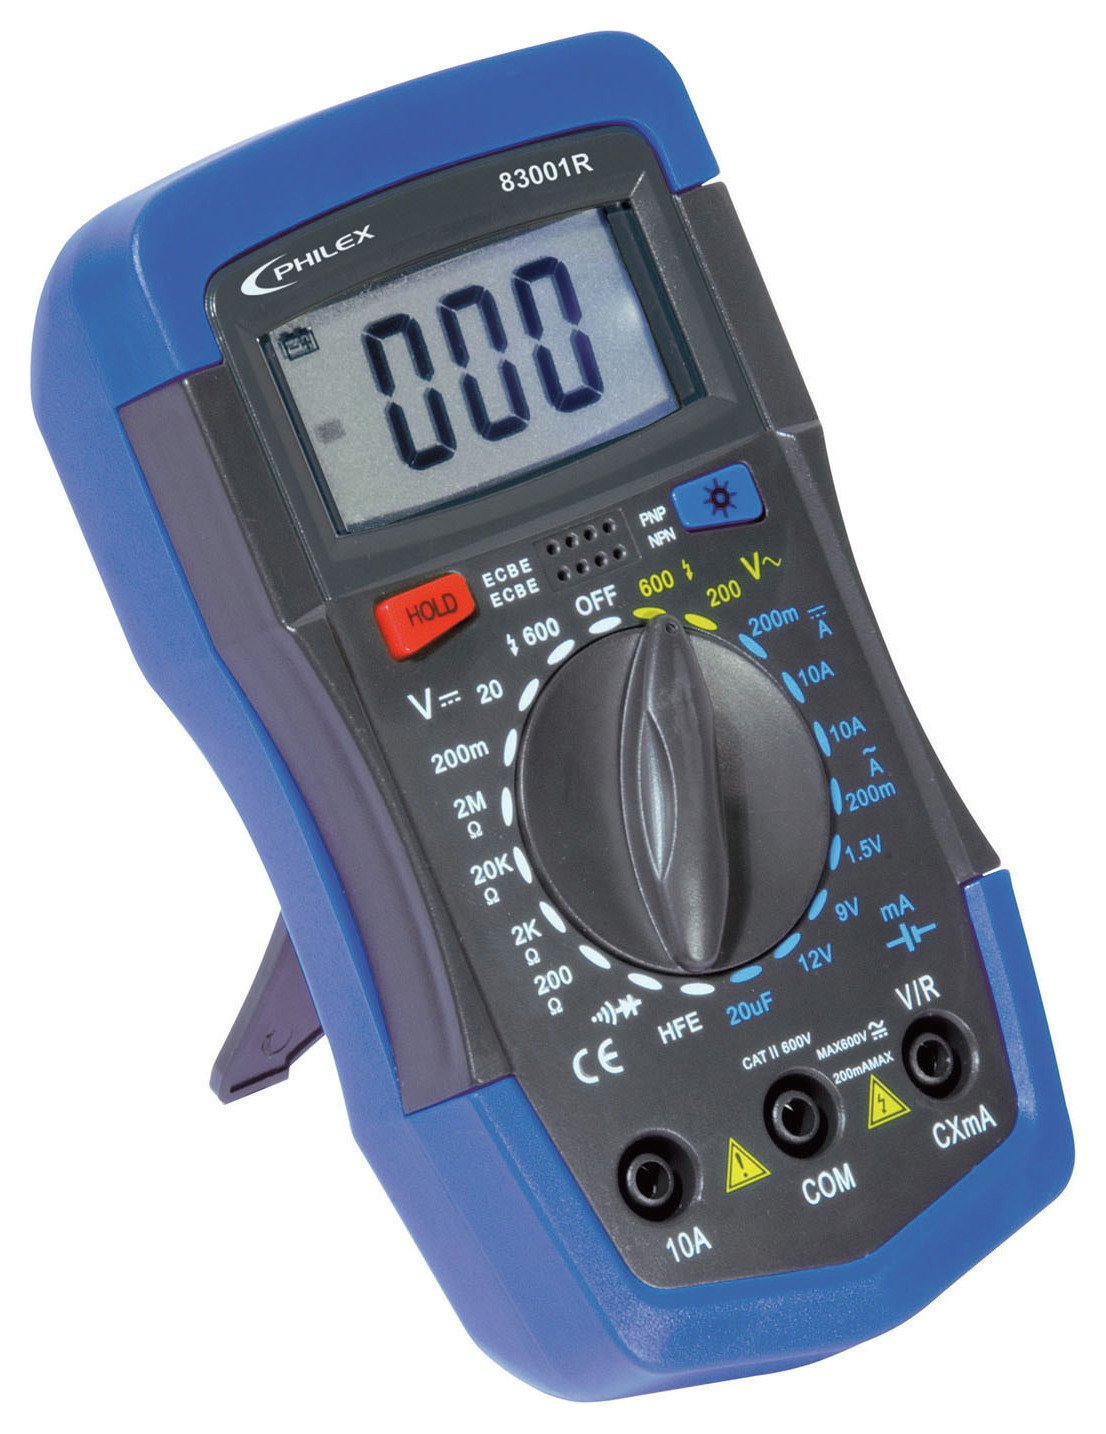 Philex - 83001R Digital Meter Review